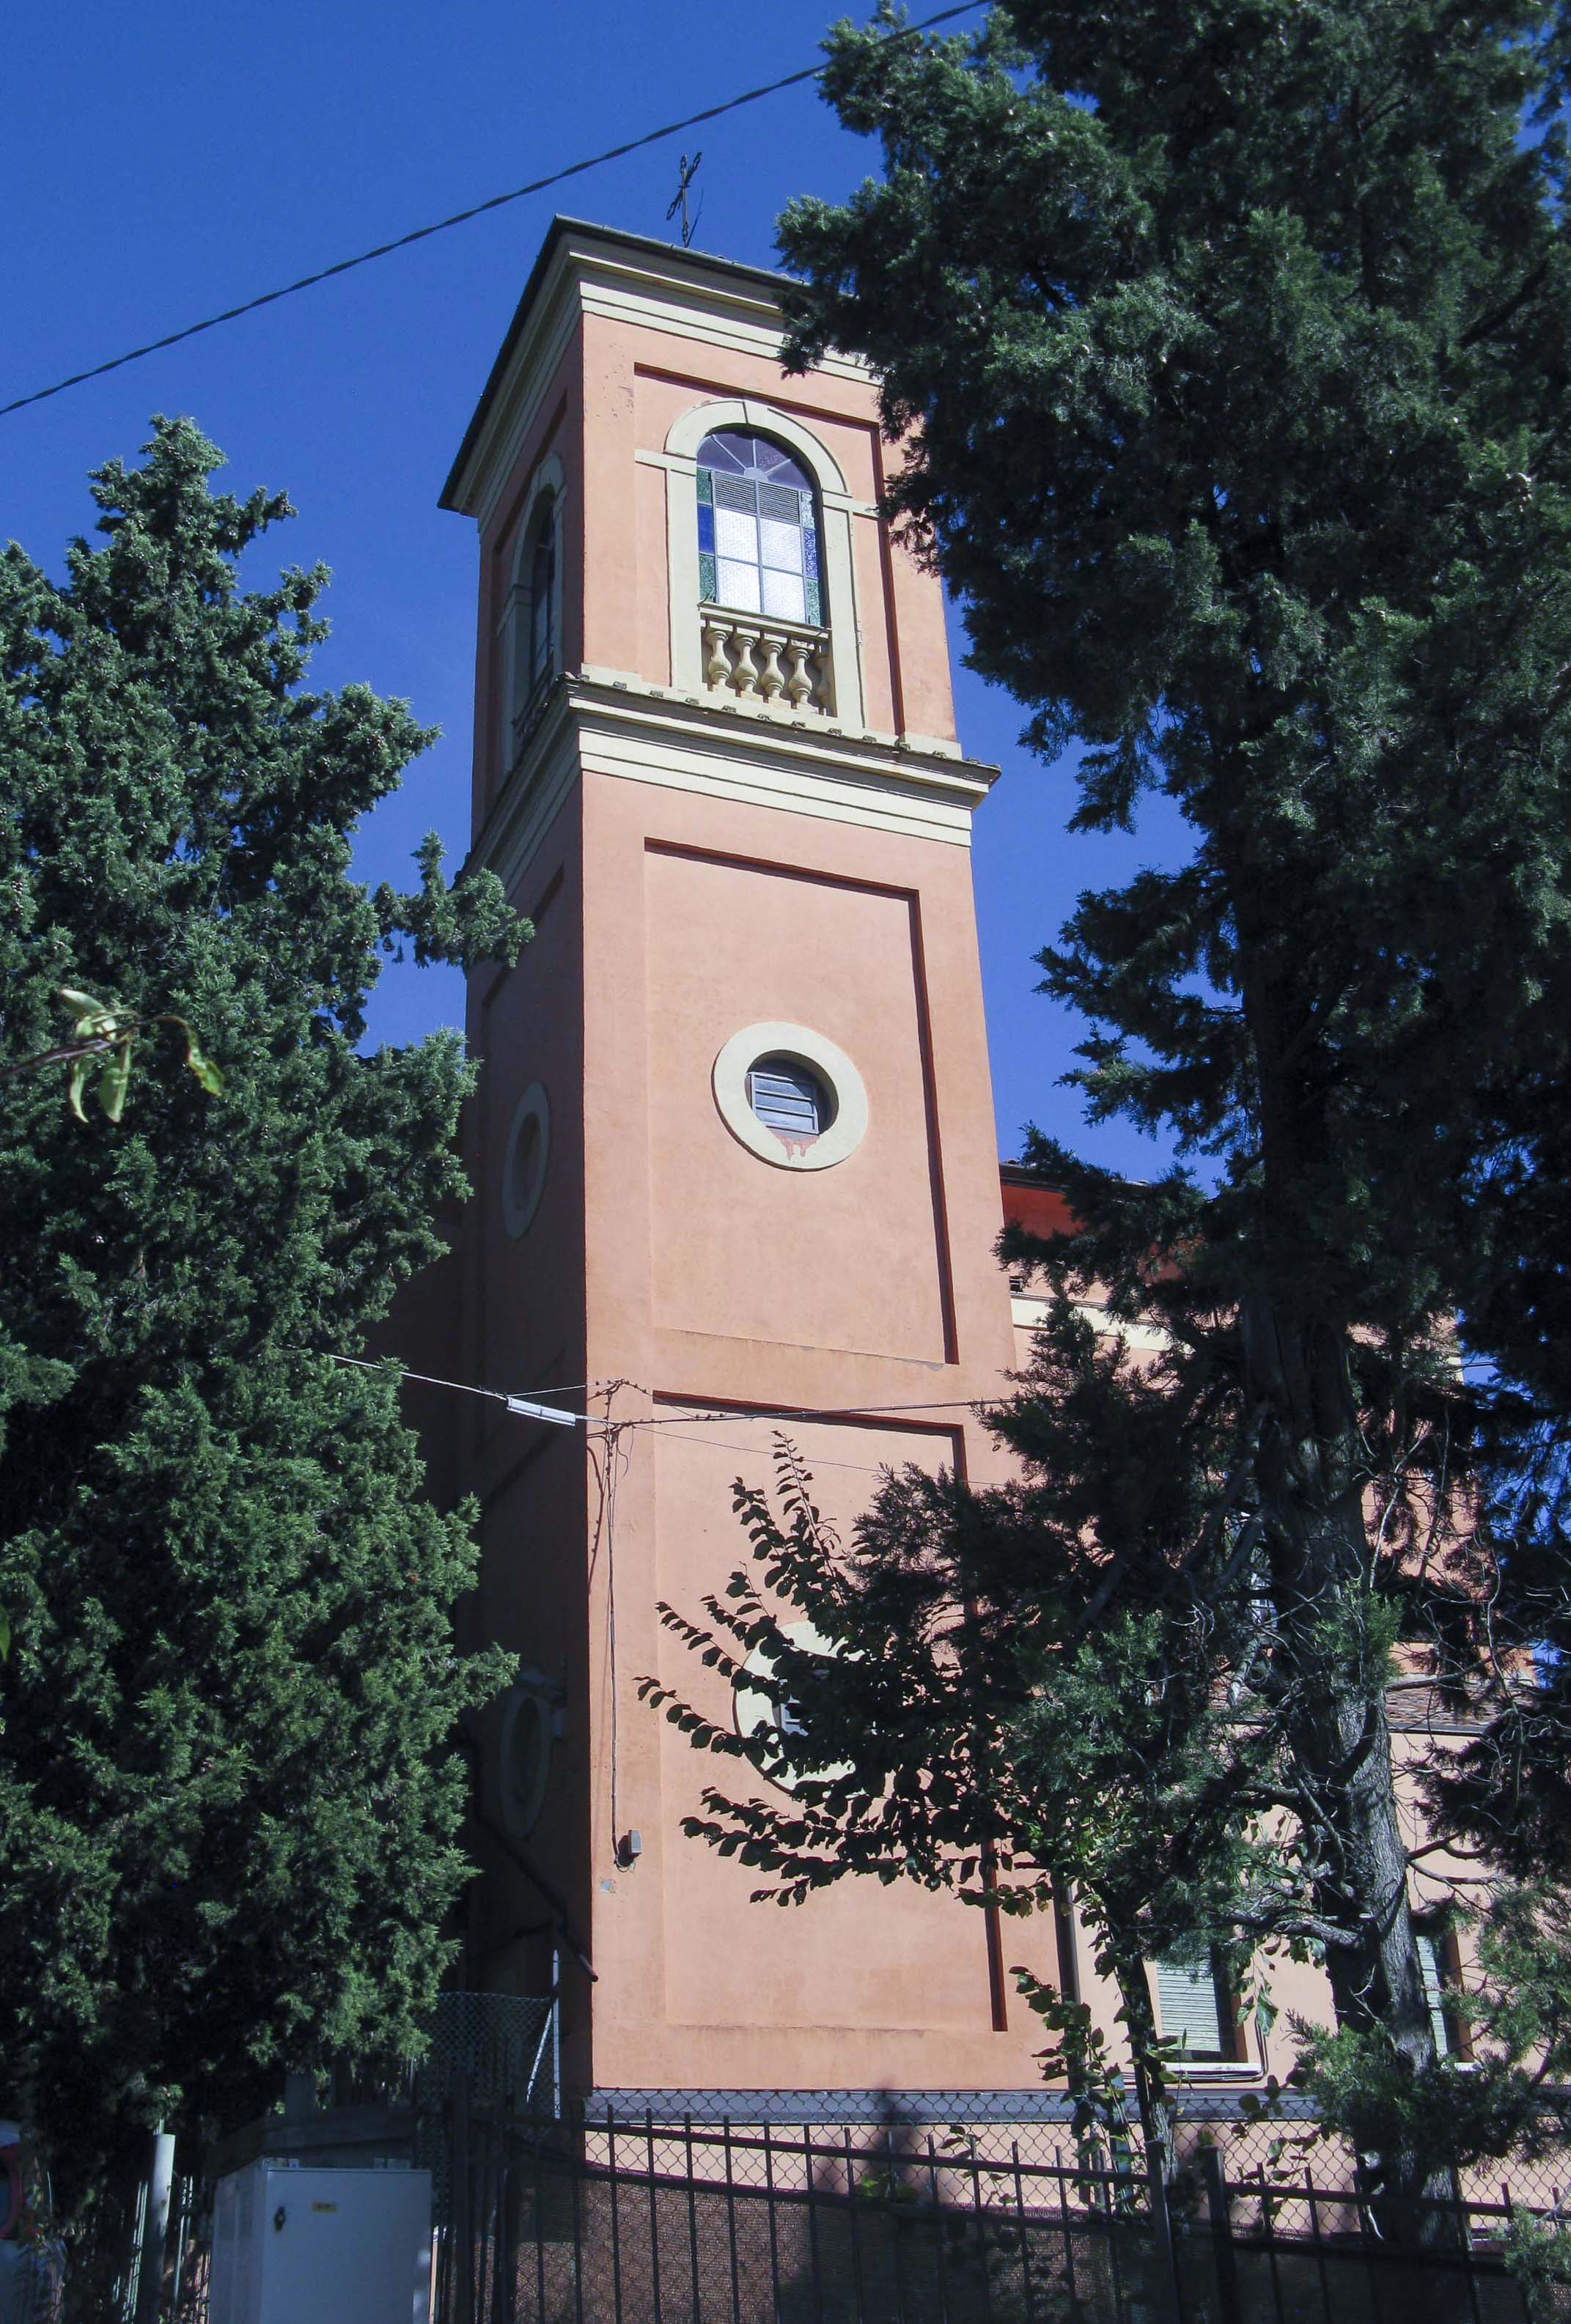 Campanile Chiesa della Beata Vergine Assunta (campanile) - Bologna (BO) 